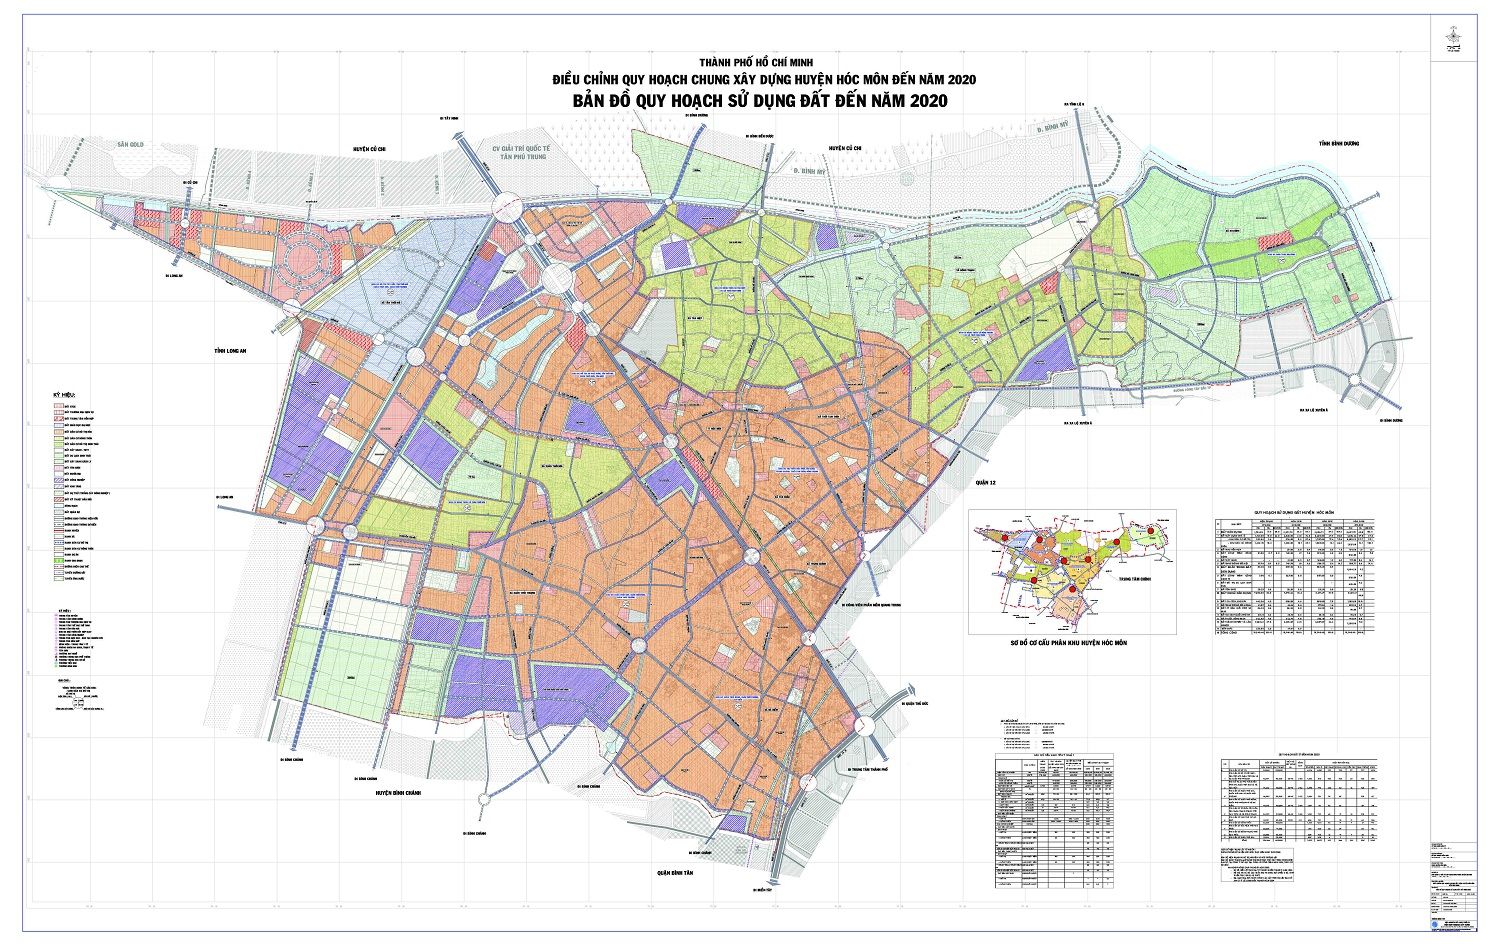 Xem bản đồ quy hoạch huyện Hóc Môn TPHCM đến năm 2020